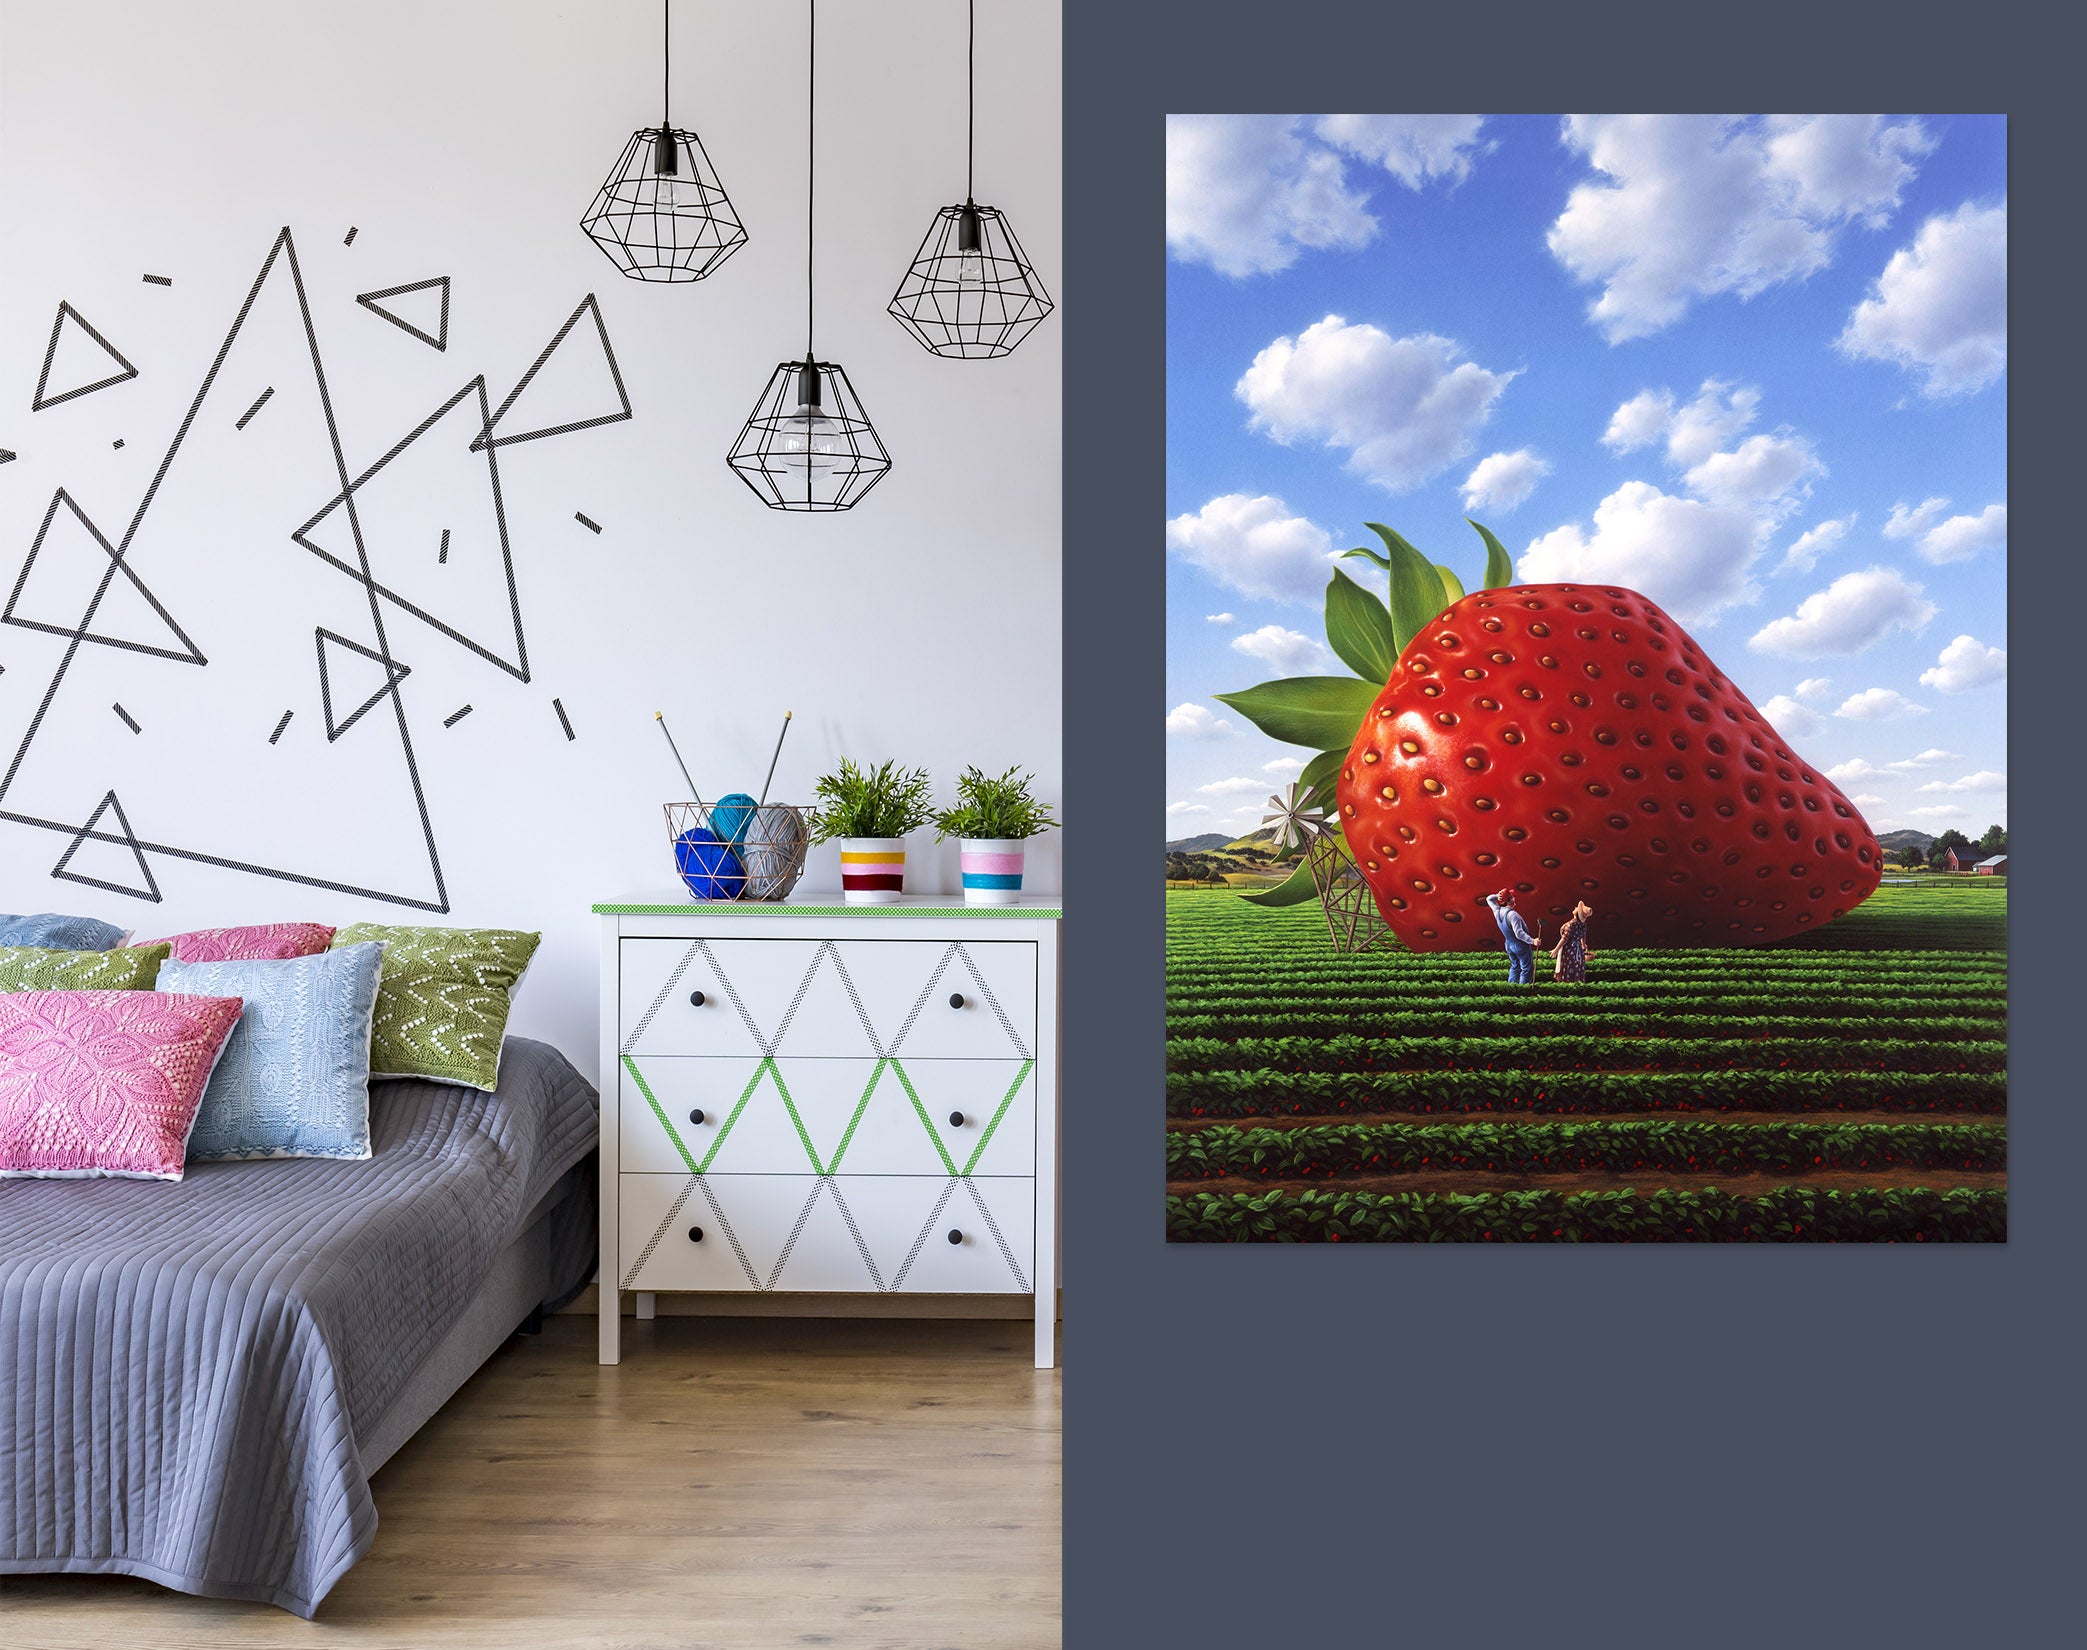 3D Giant Strawberry 85197 Jerry LoFaro Wall Sticker